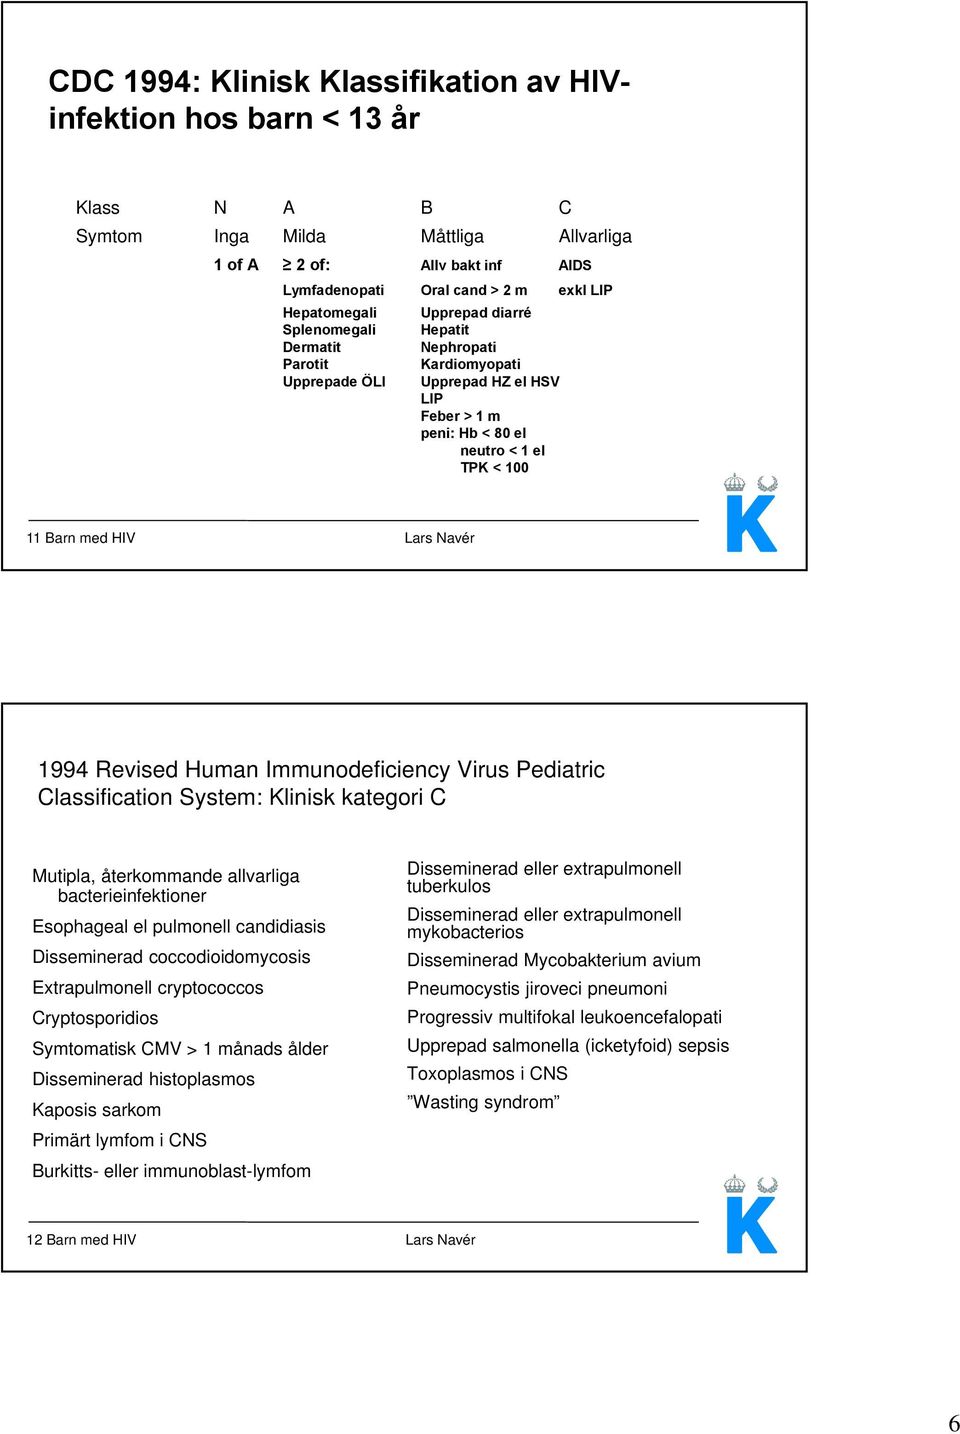 Lars Navér 1994 Revised Human Immunodeficiency Virus Pediatric Classification System: Klinisk kategori C Mutipla, återkommande allvarliga bacterieinfektioner Esophageal el pulmonell candidiasis